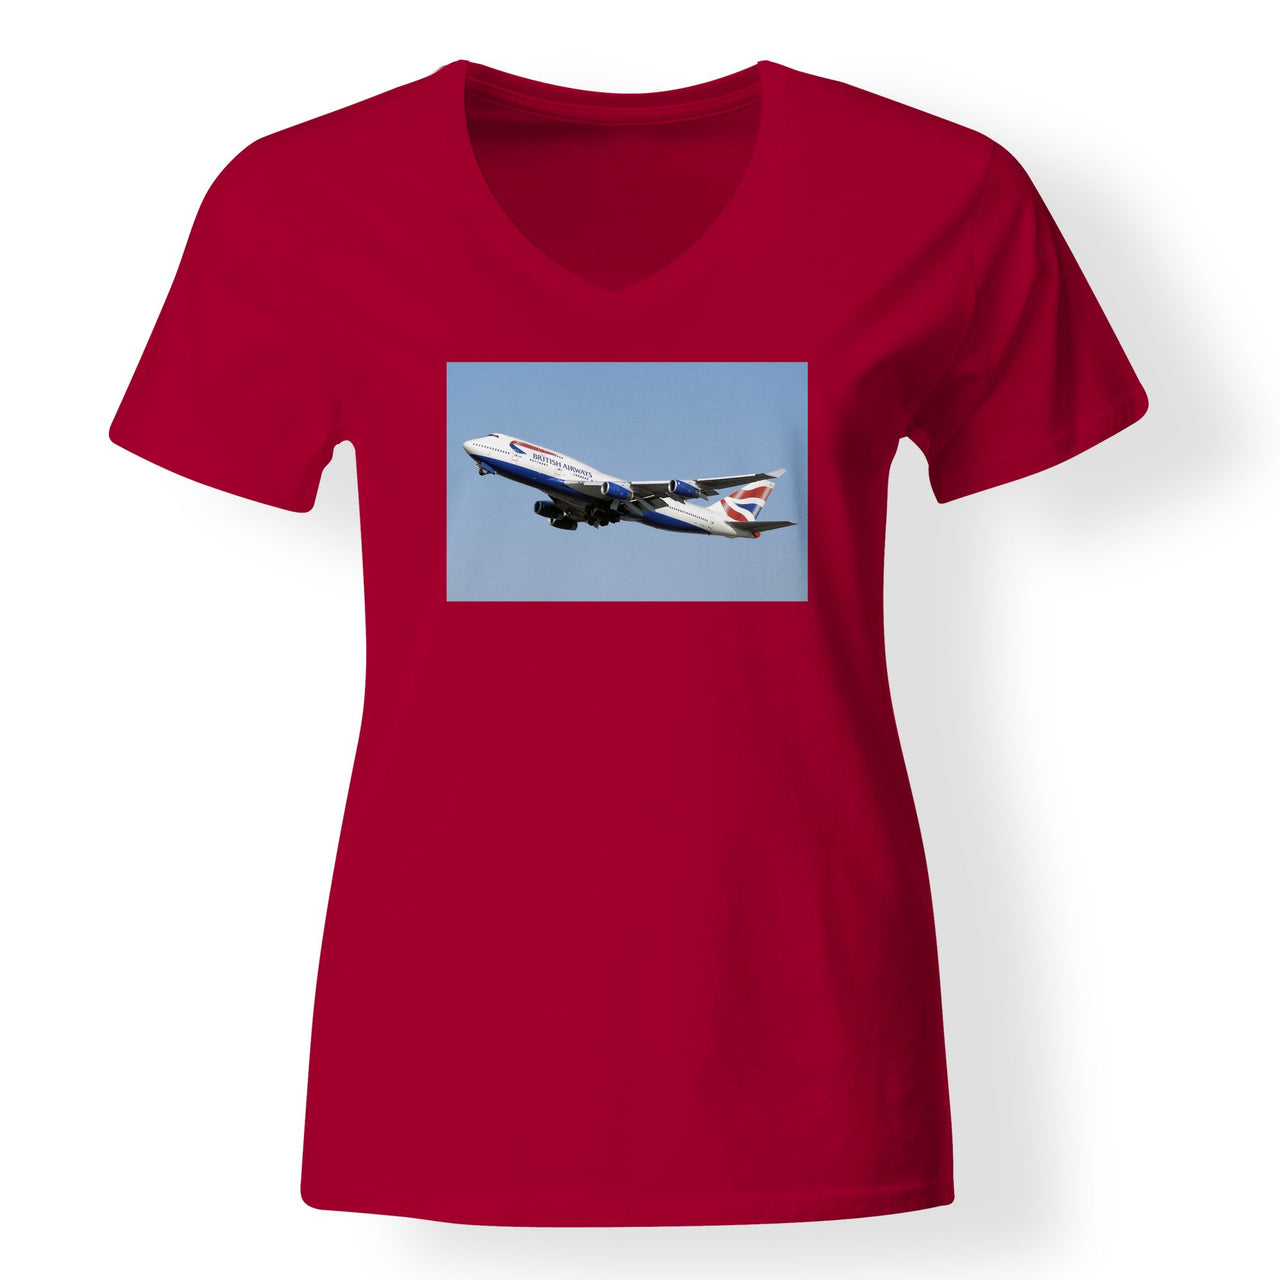 Departing British Airways Boeing 747 Designed V-Neck T-Shirts